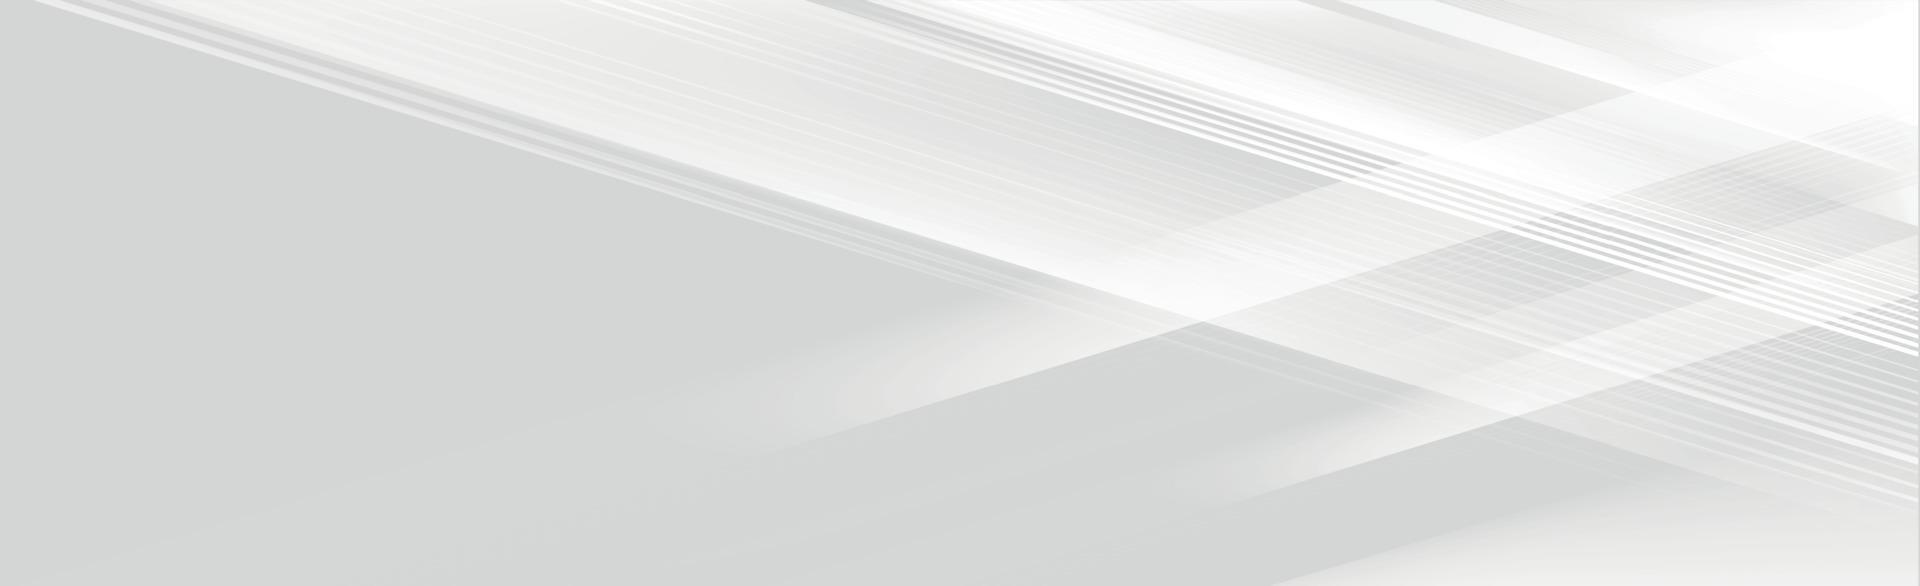 vit vektor panorama bakgrund med raka linjer och skuggor